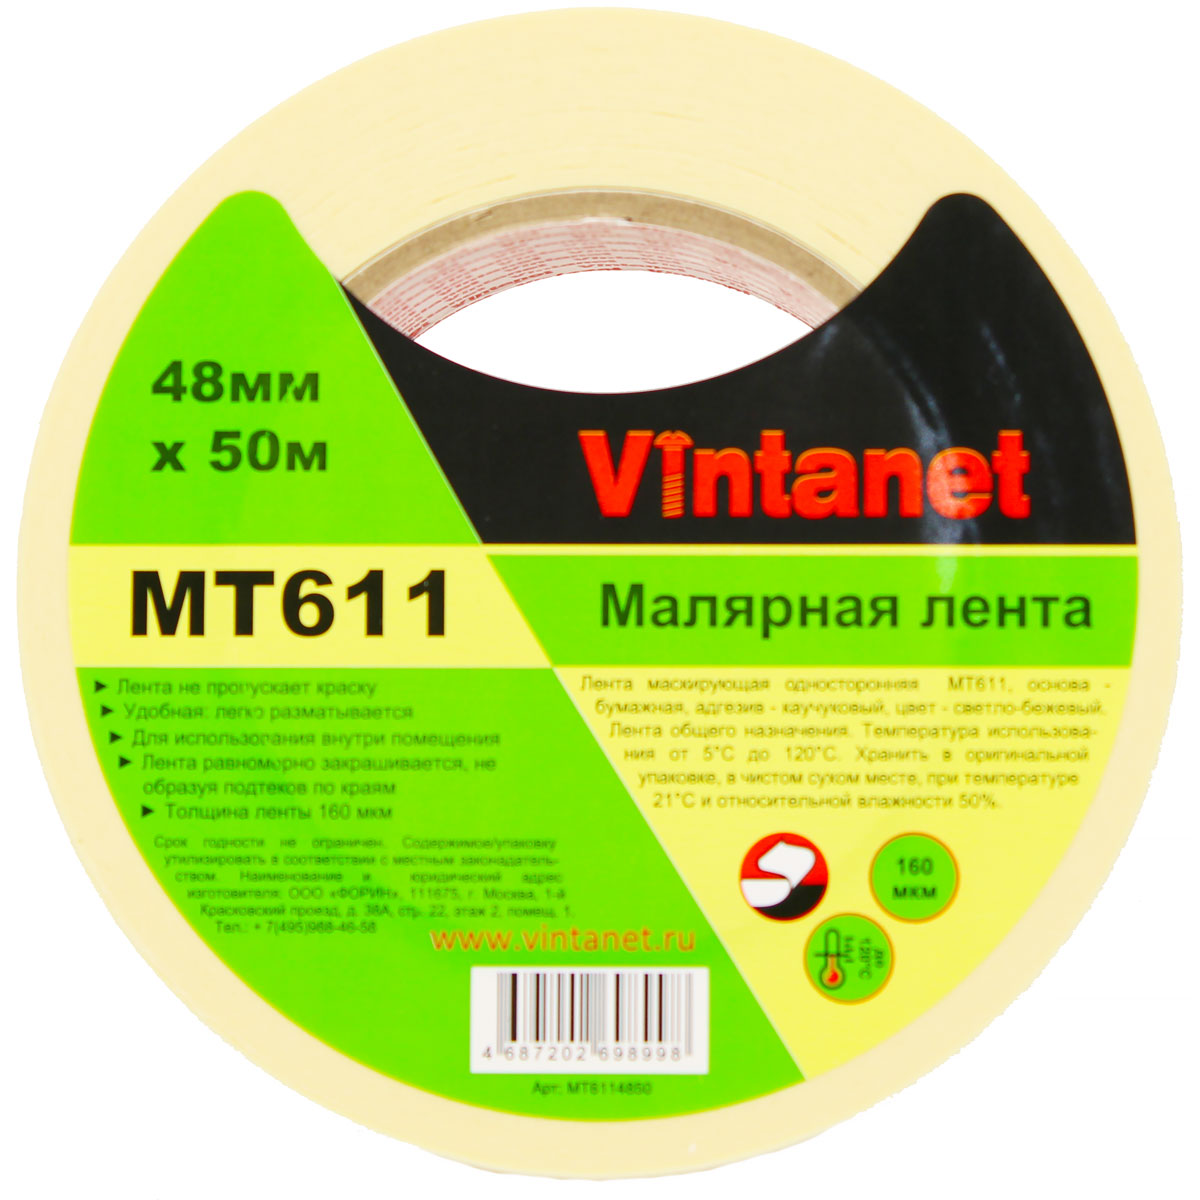 Лента малярная высокотемпературная Vintanet MT611, 120 С, 160 мкм, 48мм х 50м, MT6114850